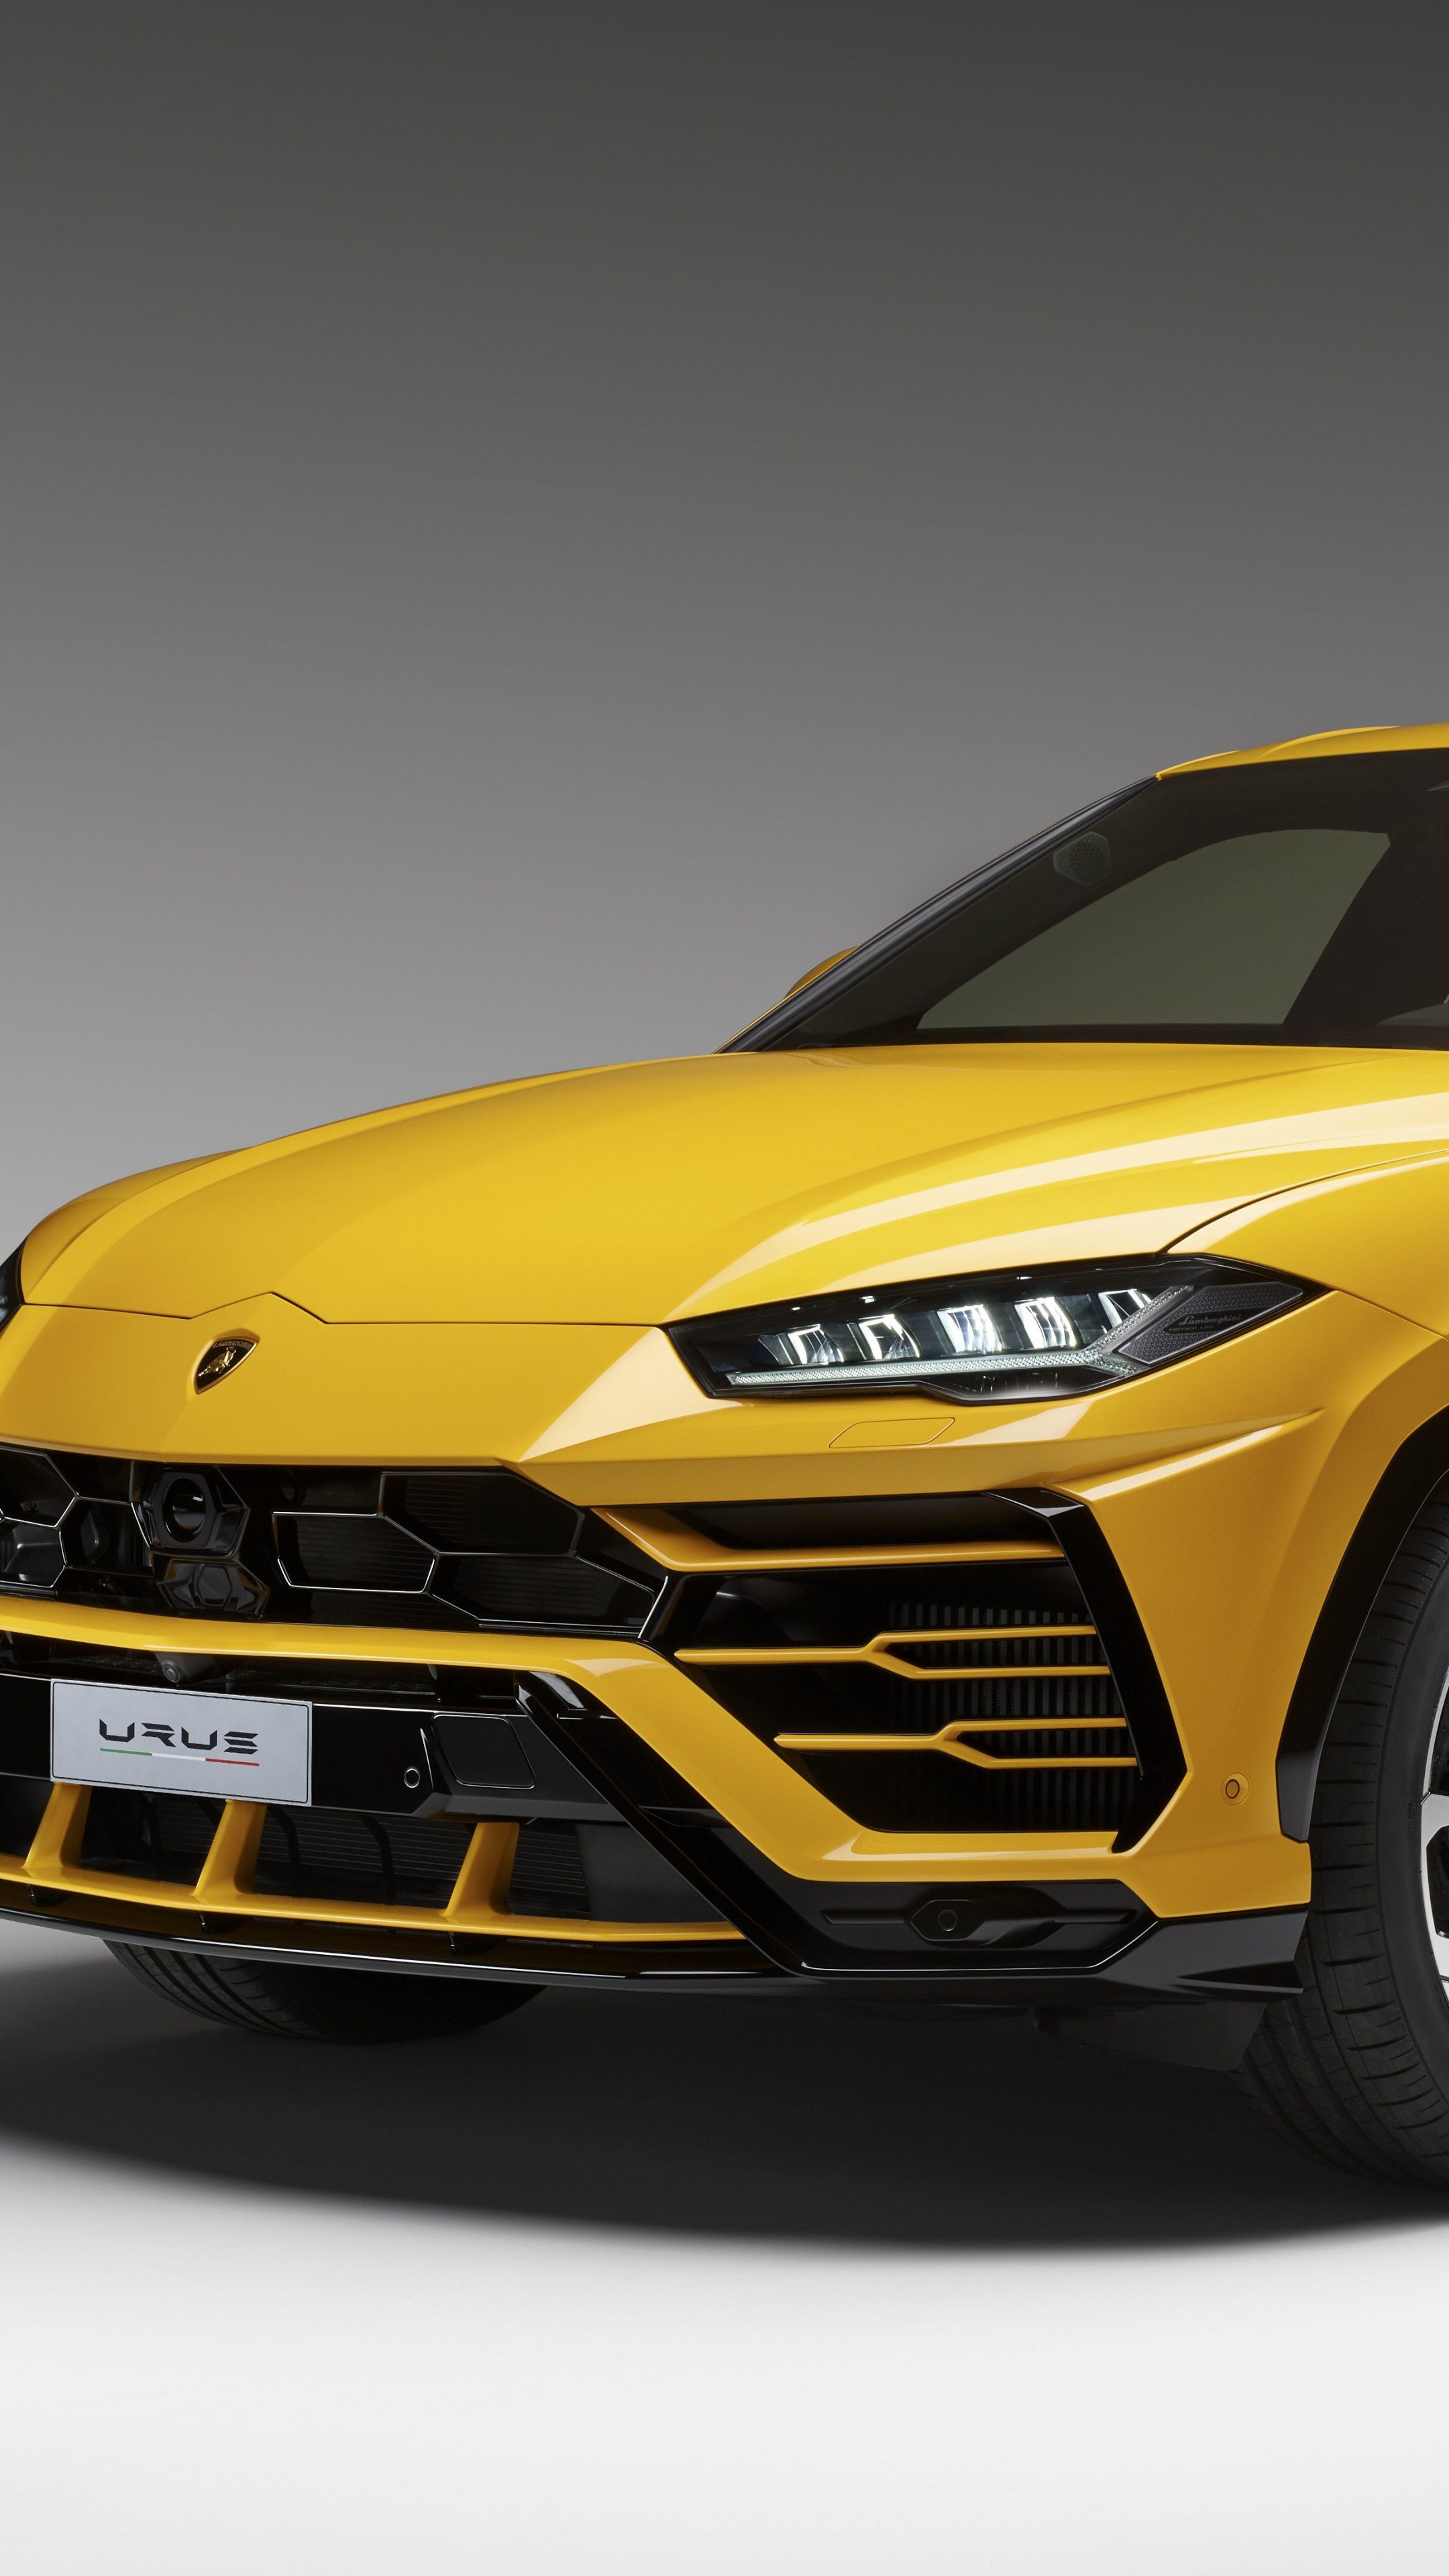 Lamborghini Urus mod specifications